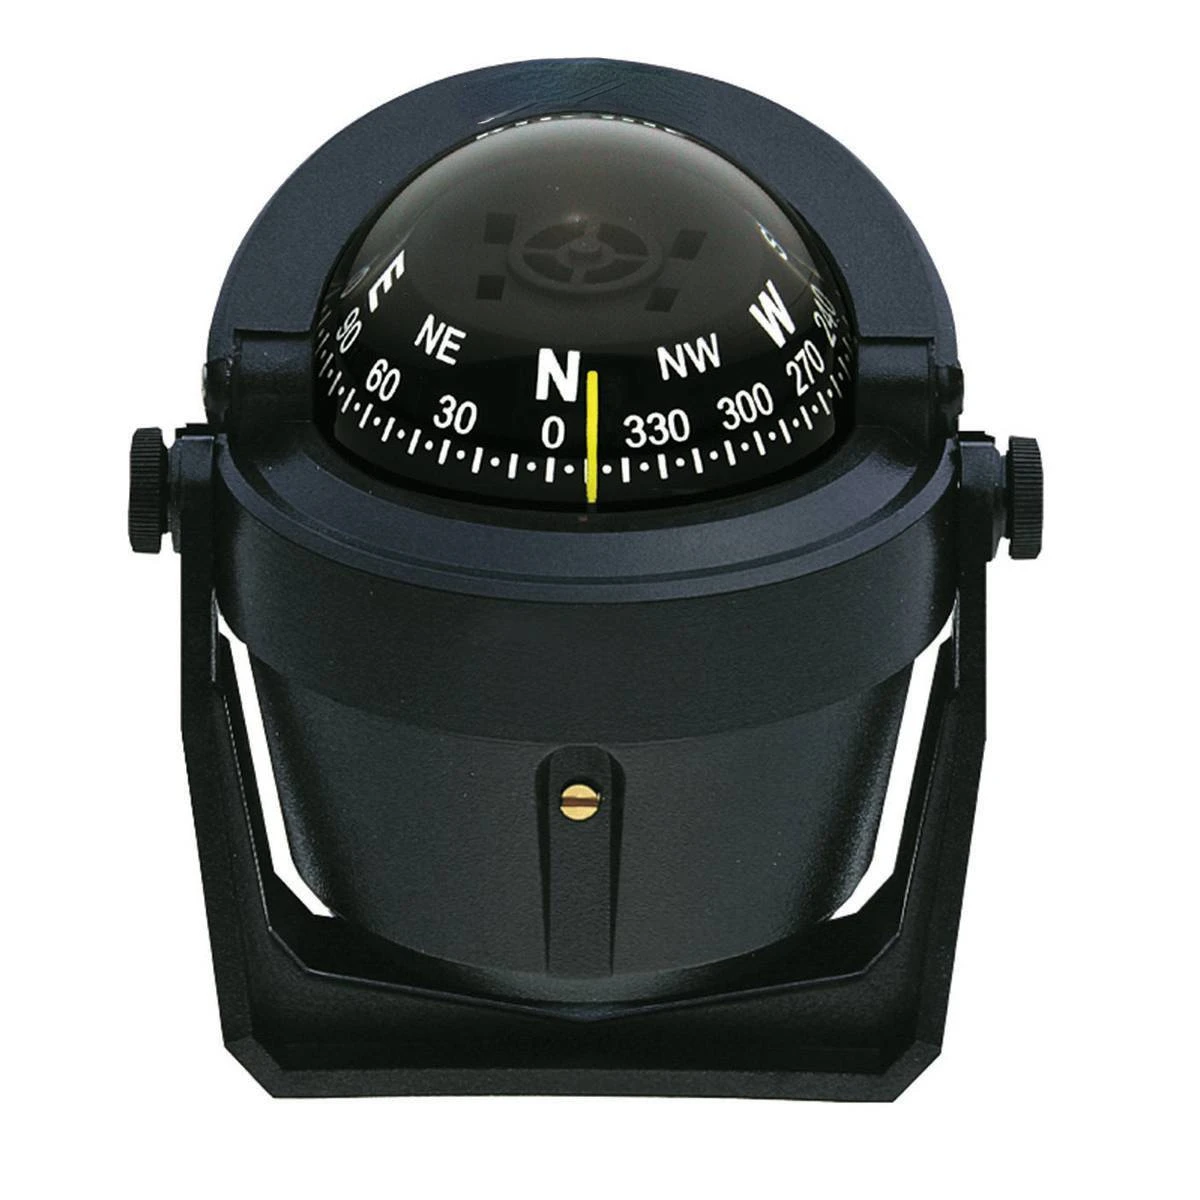 marine-magnetic-compass-b-51-f-50wt-b-81wm-x-10b-m-yacht-accessories-1pcs